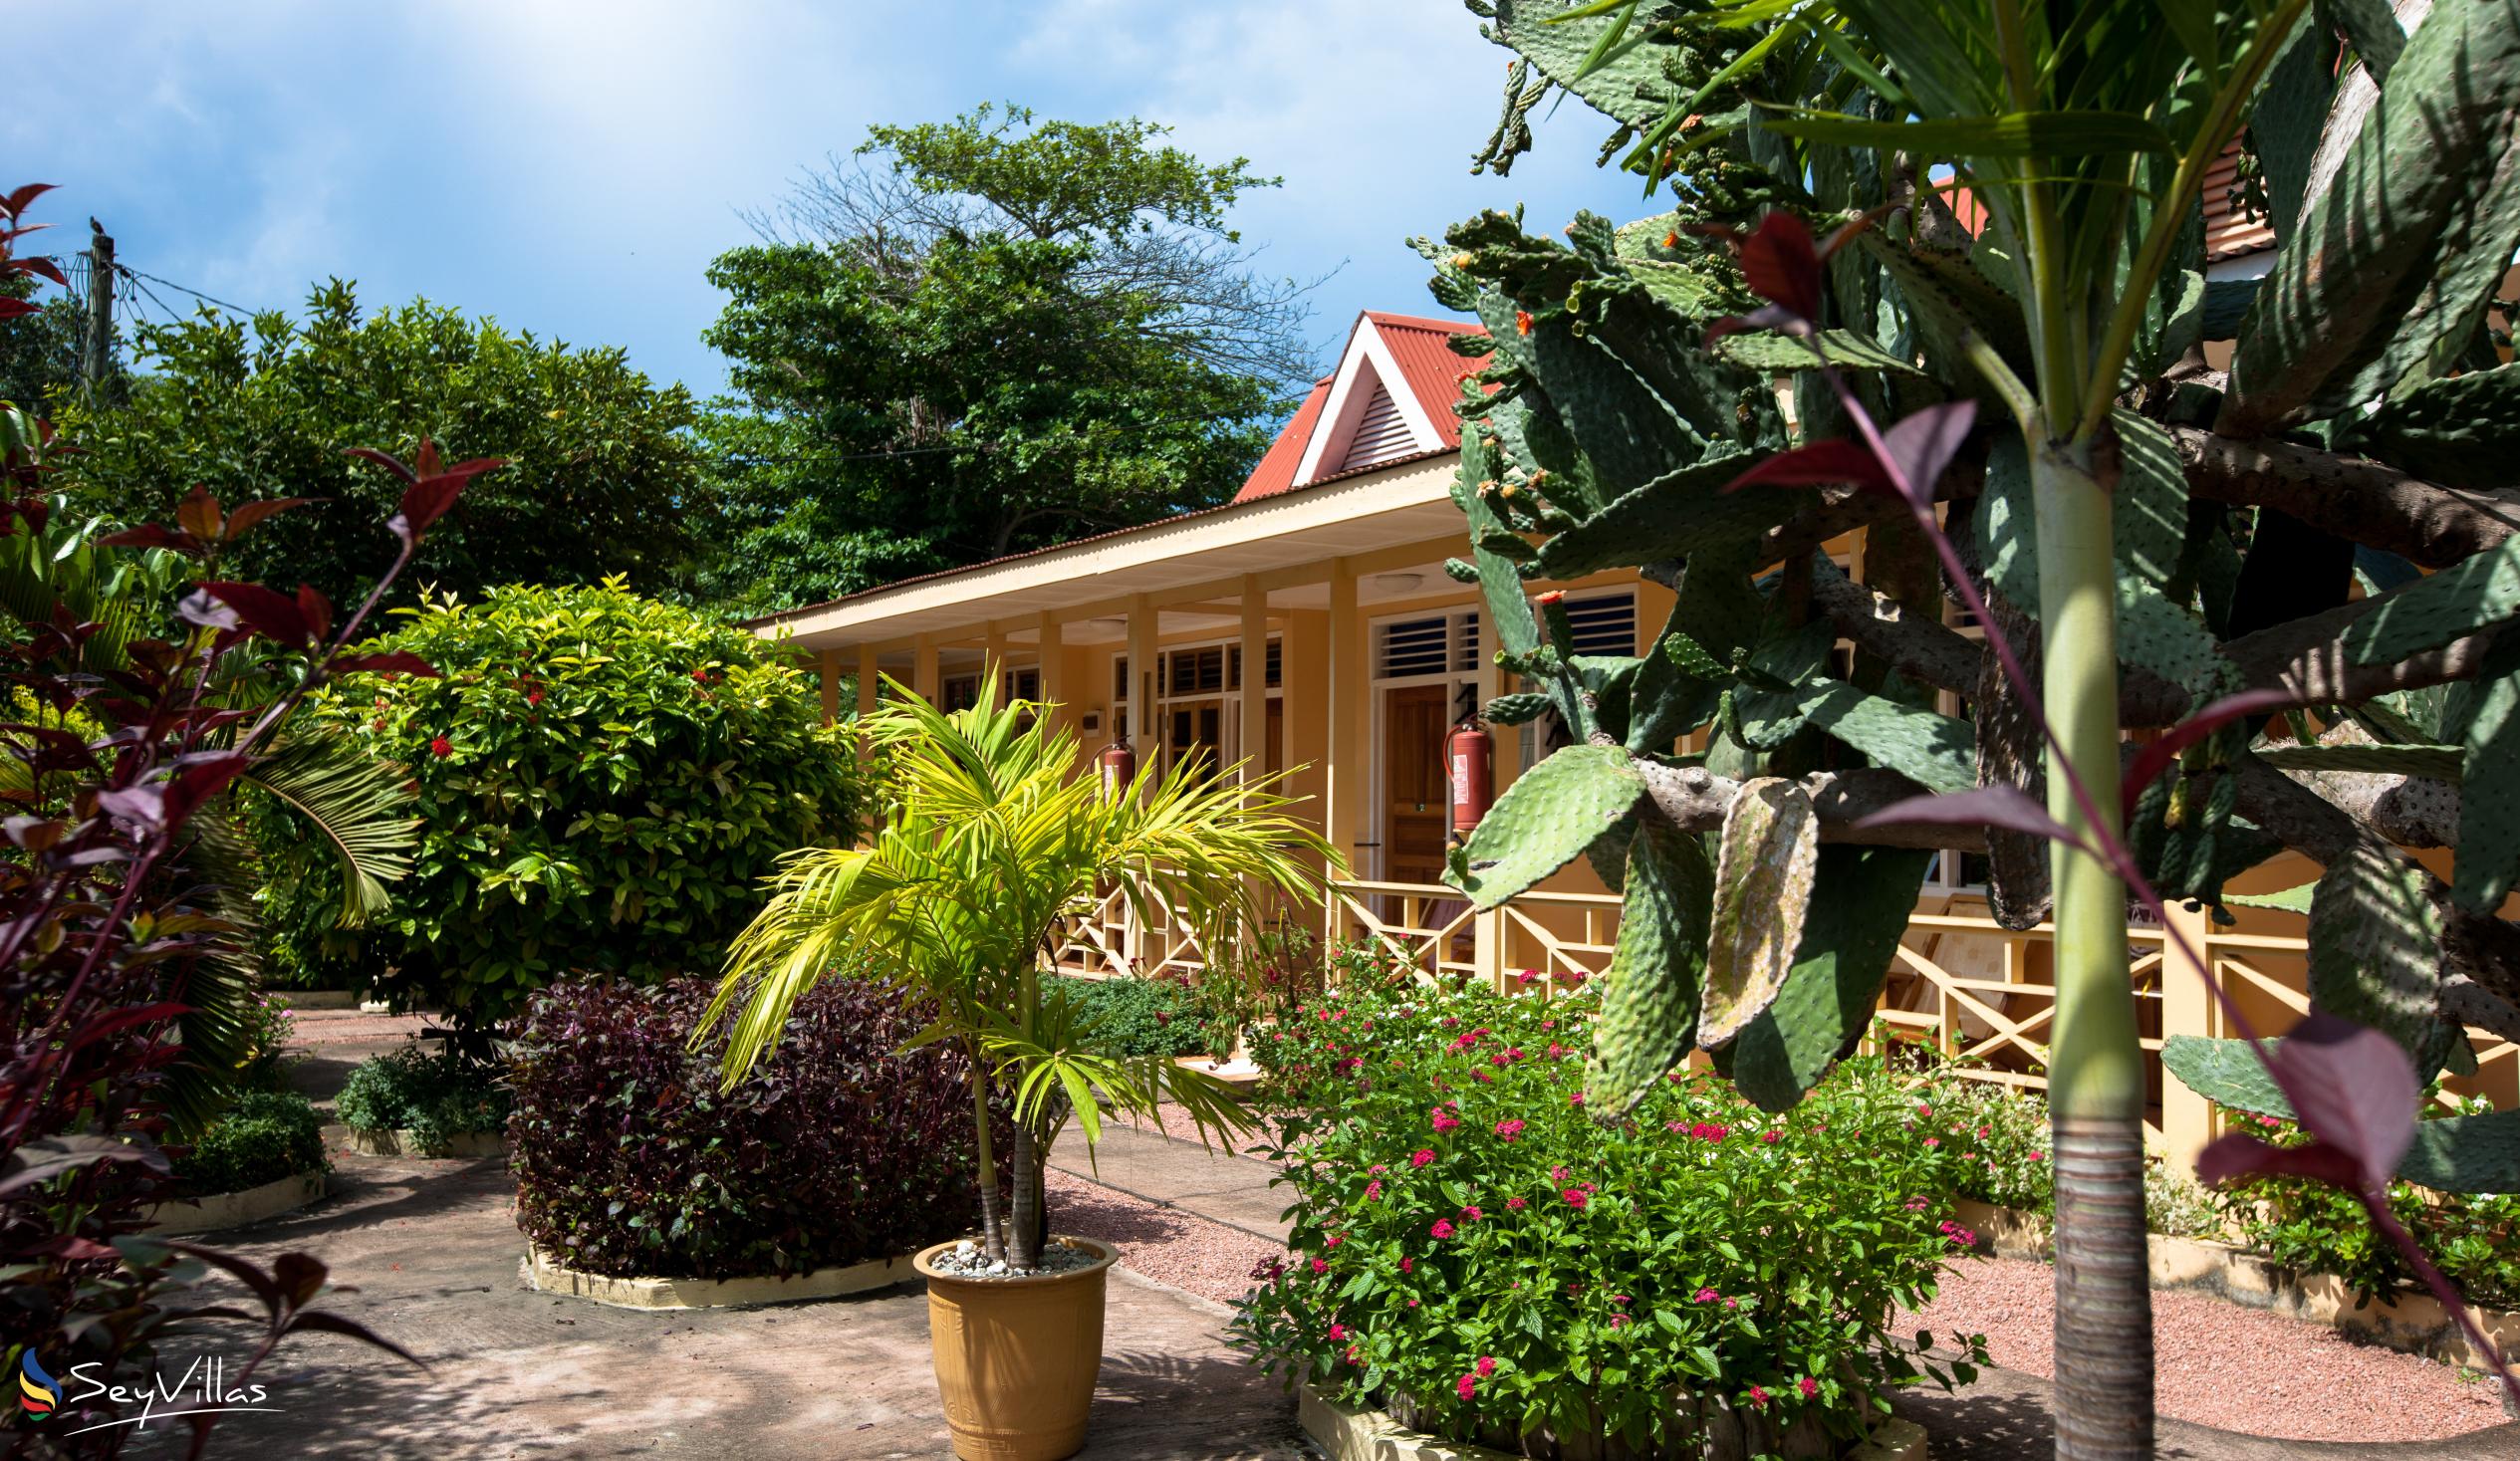 Foto 2: Chez Marston - Aussenbereich - La Digue (Seychellen)